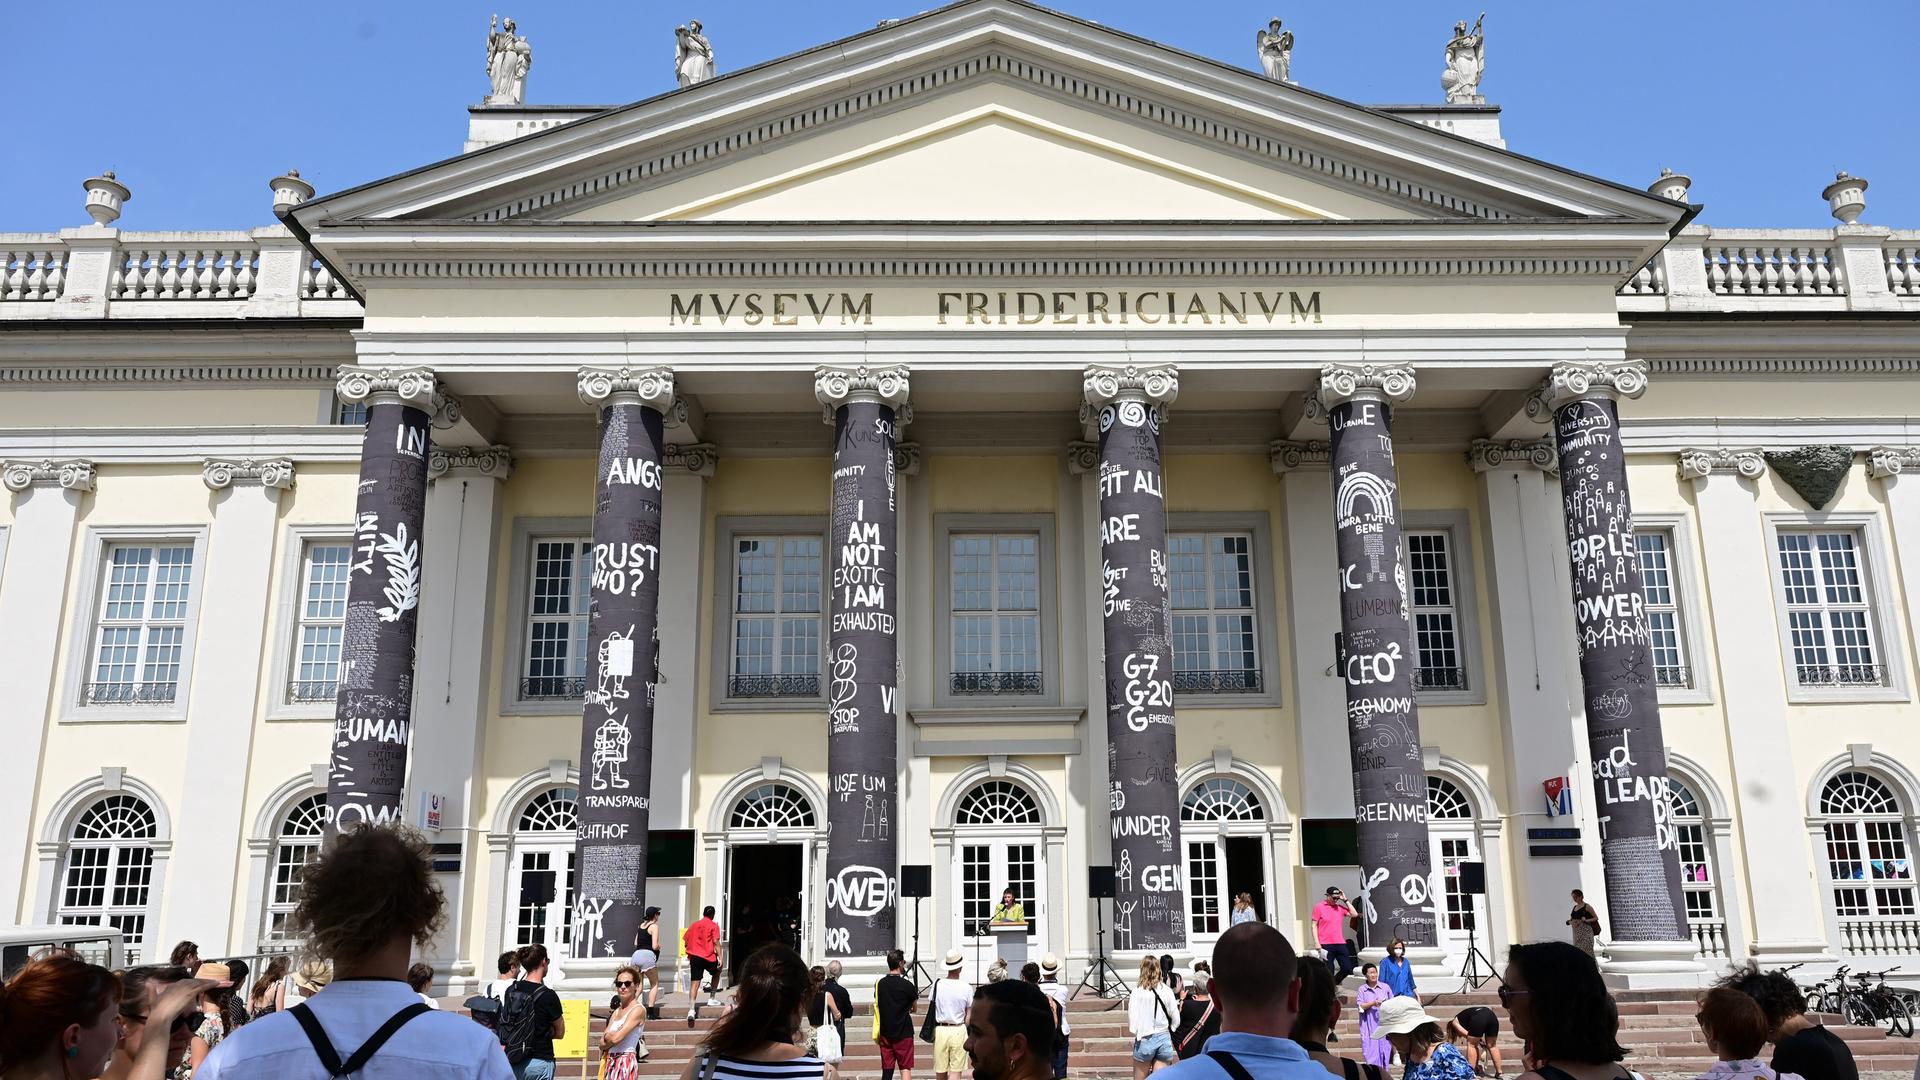 Besucher der documenta 15 stehen nach Eröffnung vor dem Fridericianum, dessen Säulen der rumänische Künstler Dan Perjovschi mit schwarzer Farbe bemalt und mit weißen Symbolen und Zeichen zu Themen wie Frieden, Solidarität oder Nachhaltigkeit beschriftet hat